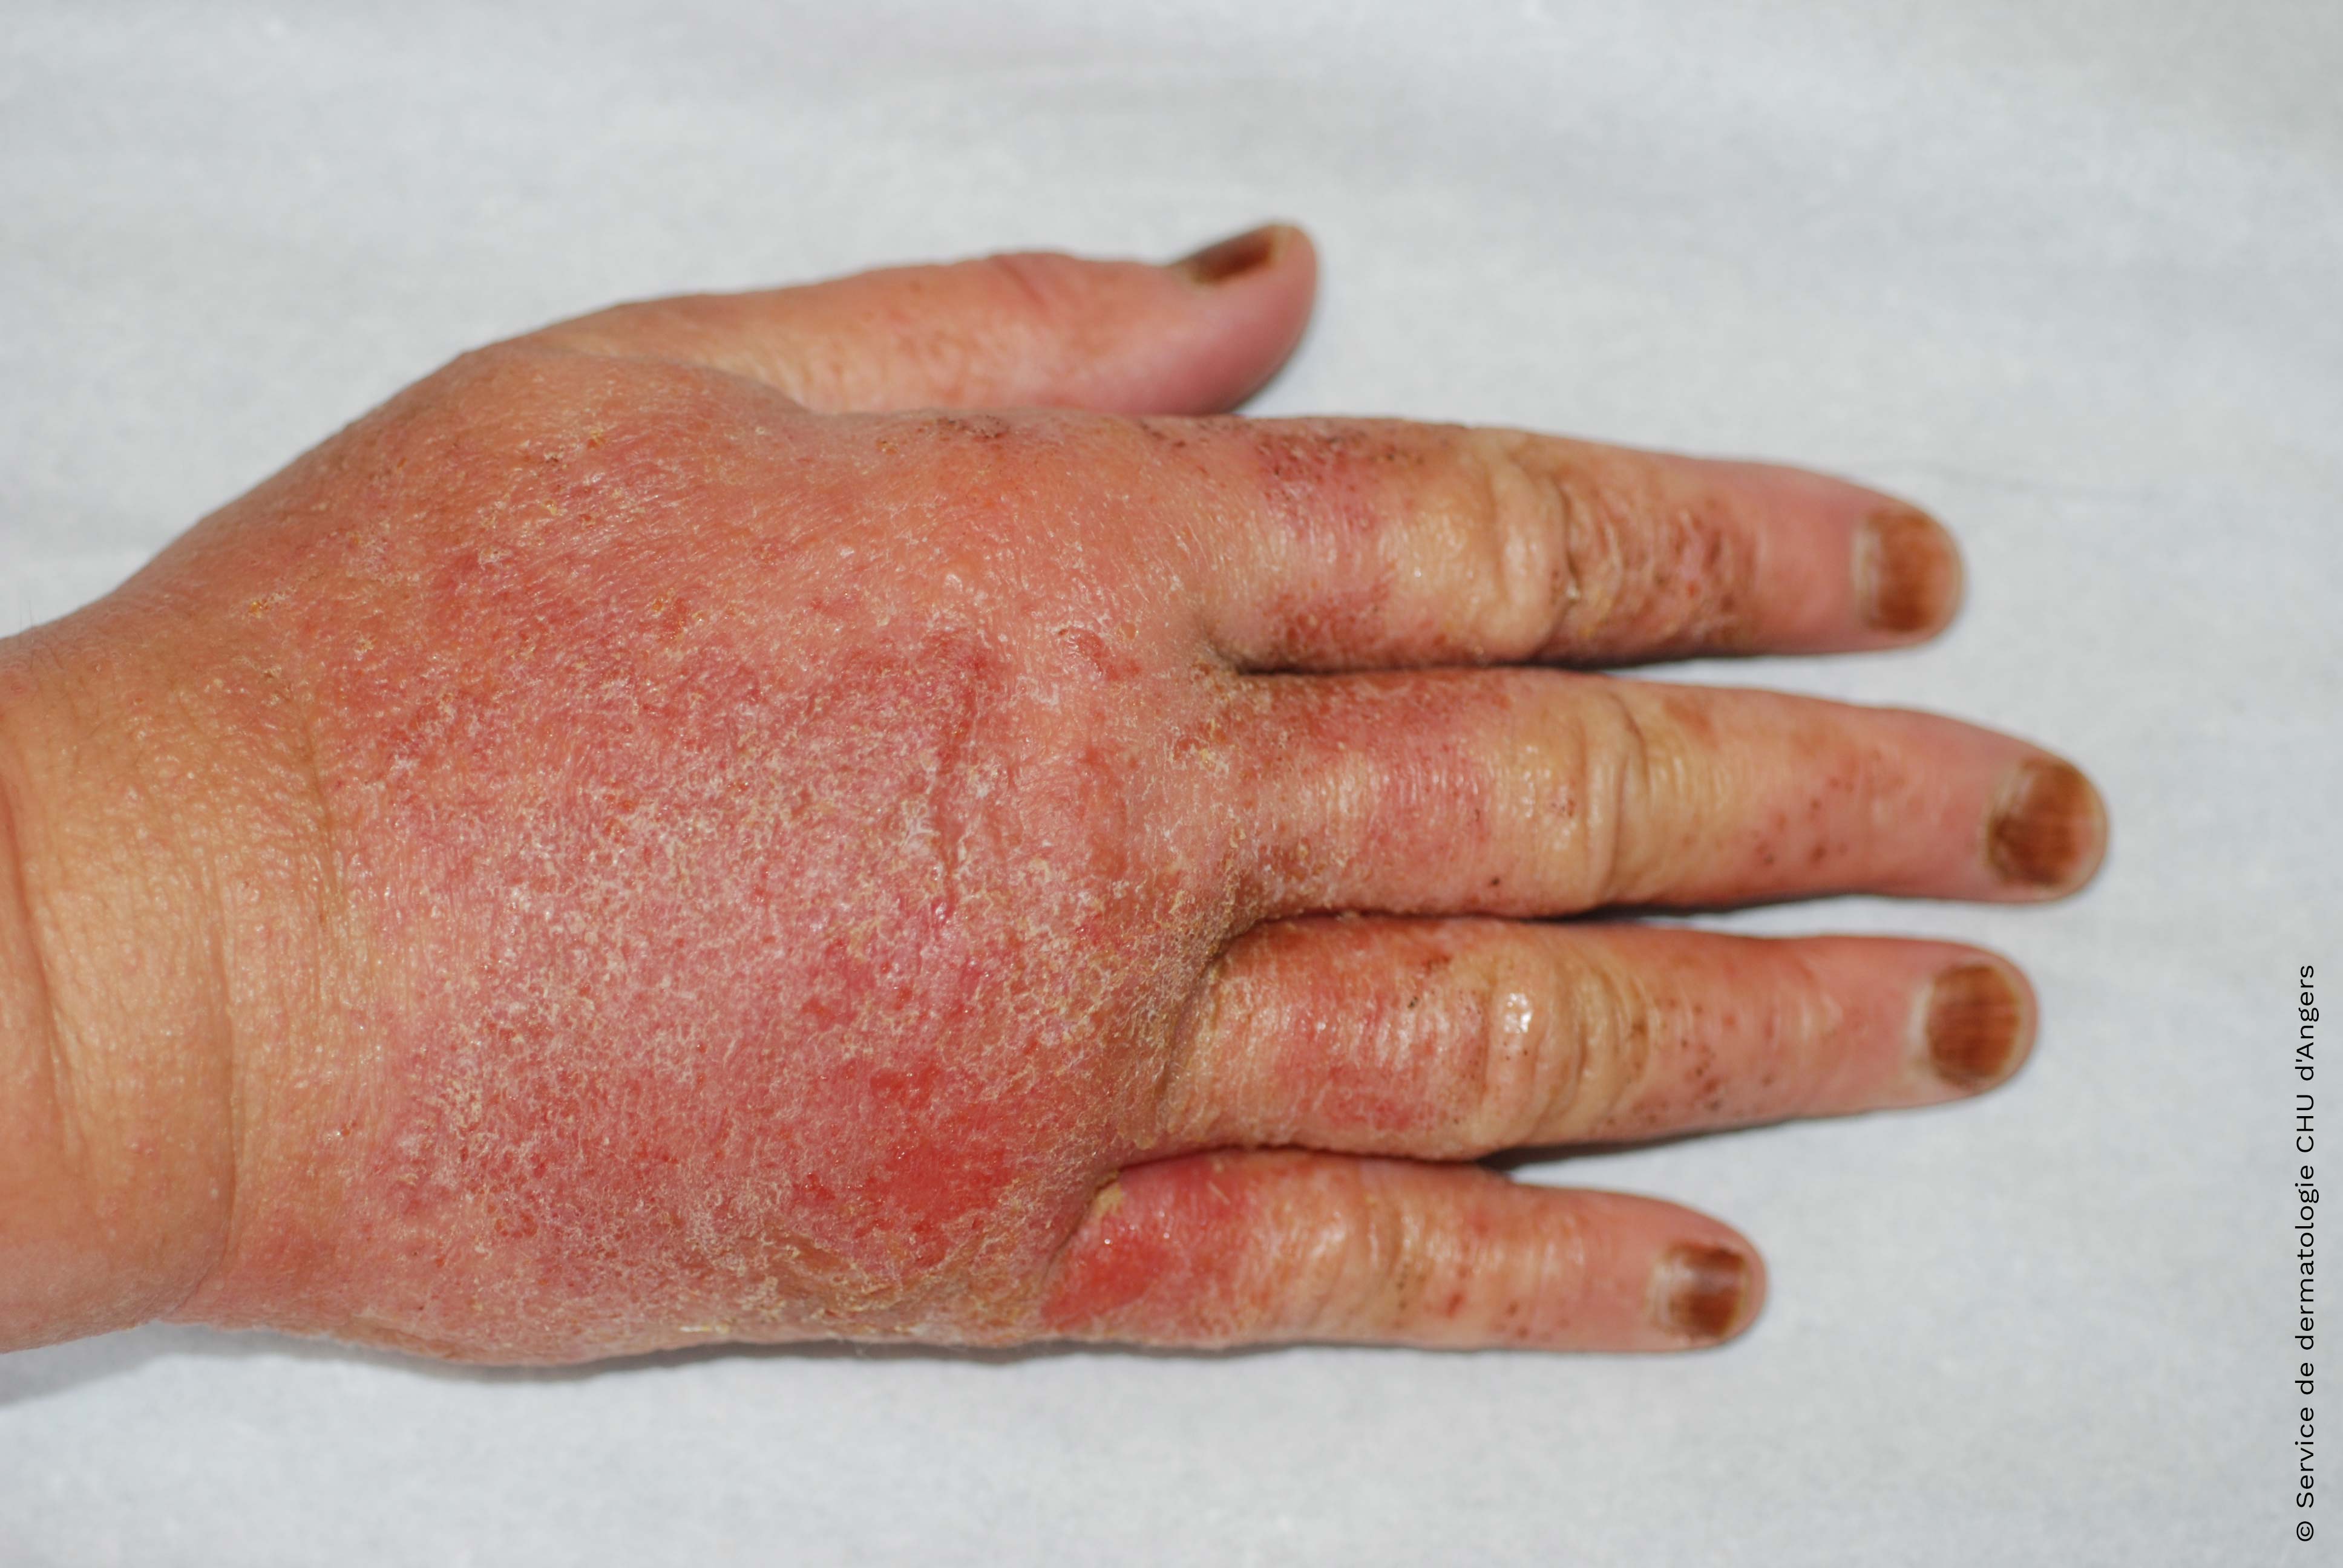 Eczema acuto delle mani, allergia al tea tree oil